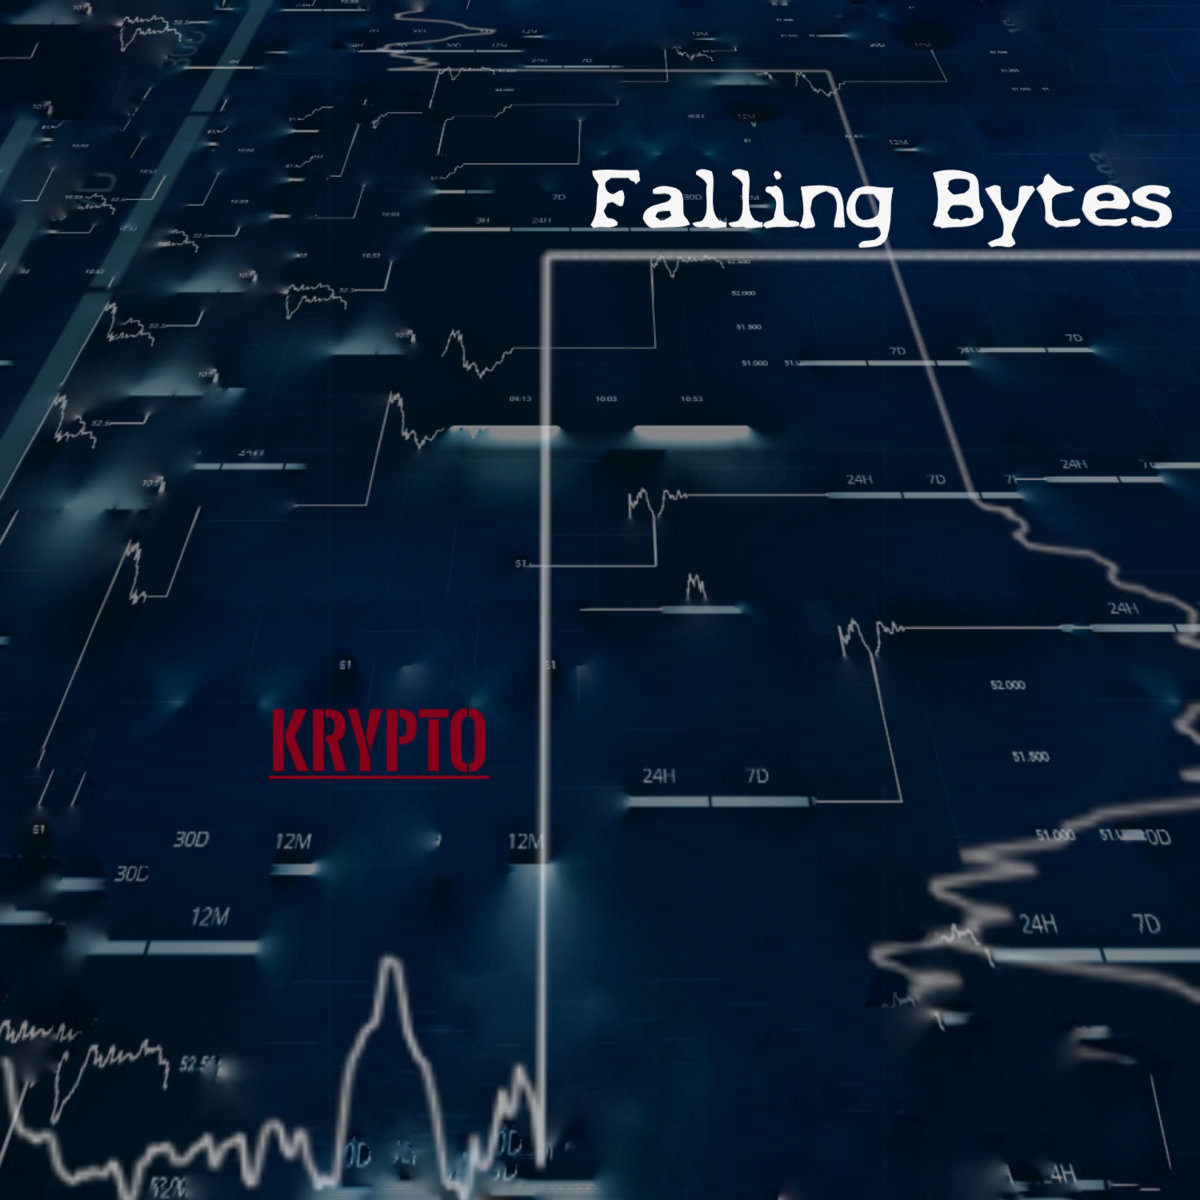 Falling Bytes - Krypto - Falling Bytes - Krypto